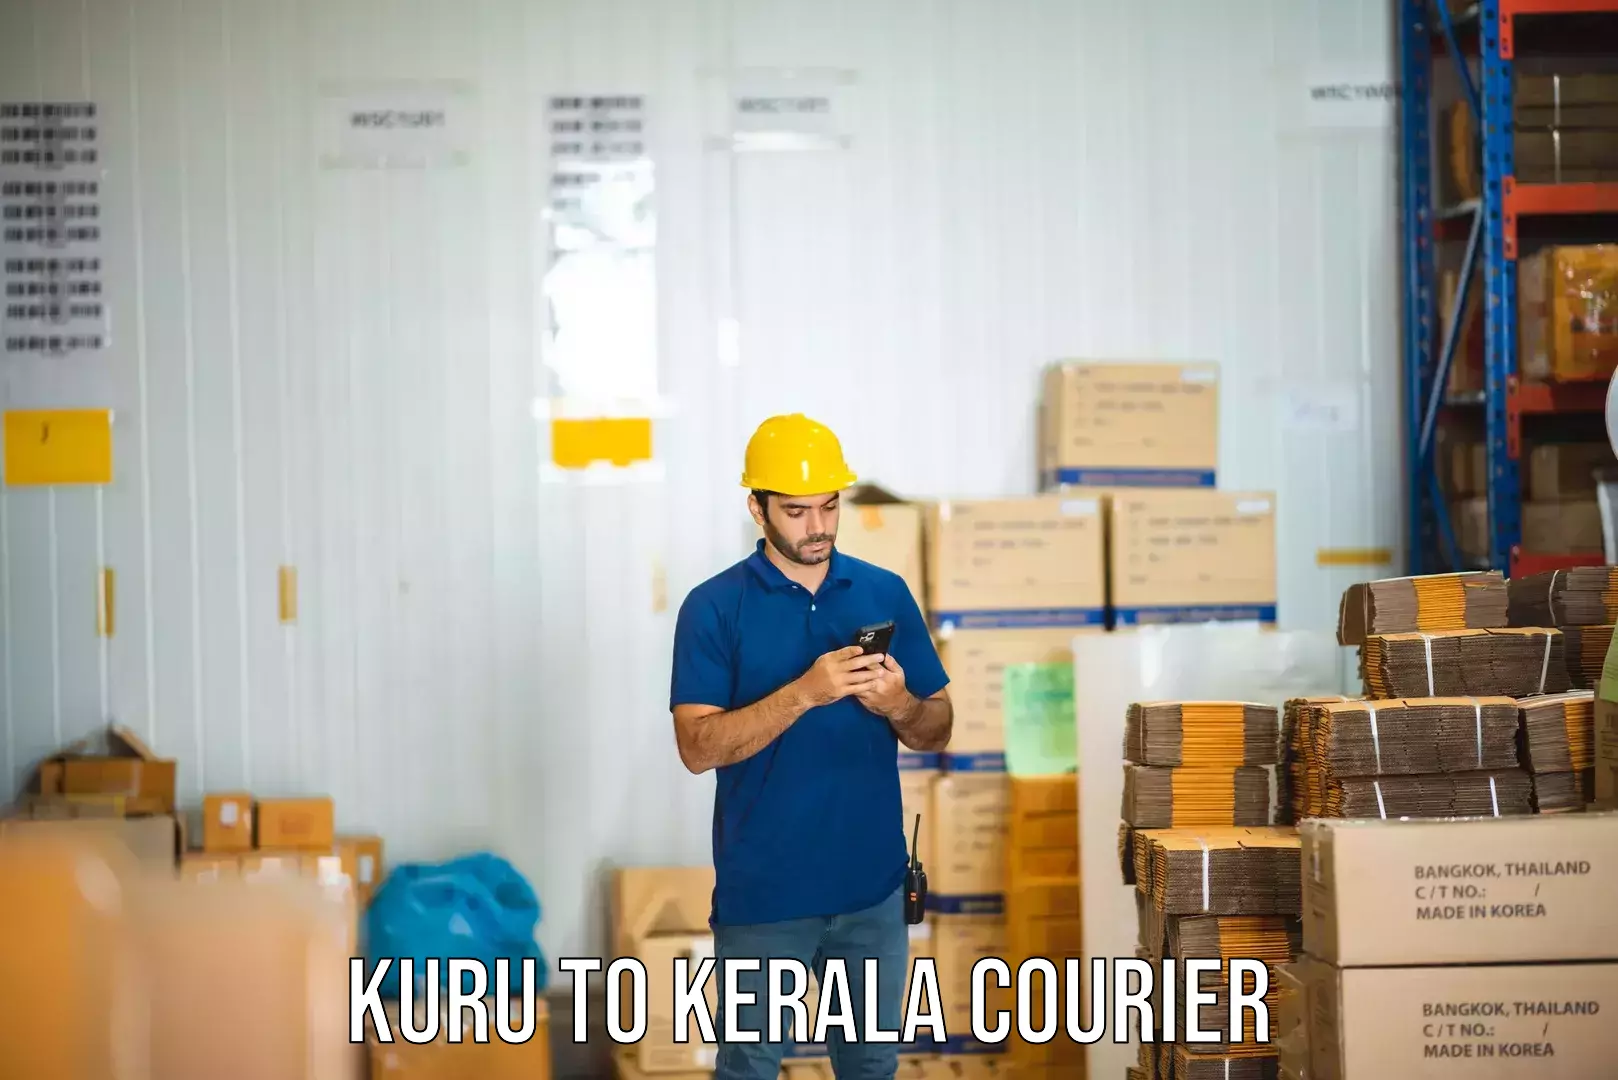 Logistics service provider Kuru to Kannur